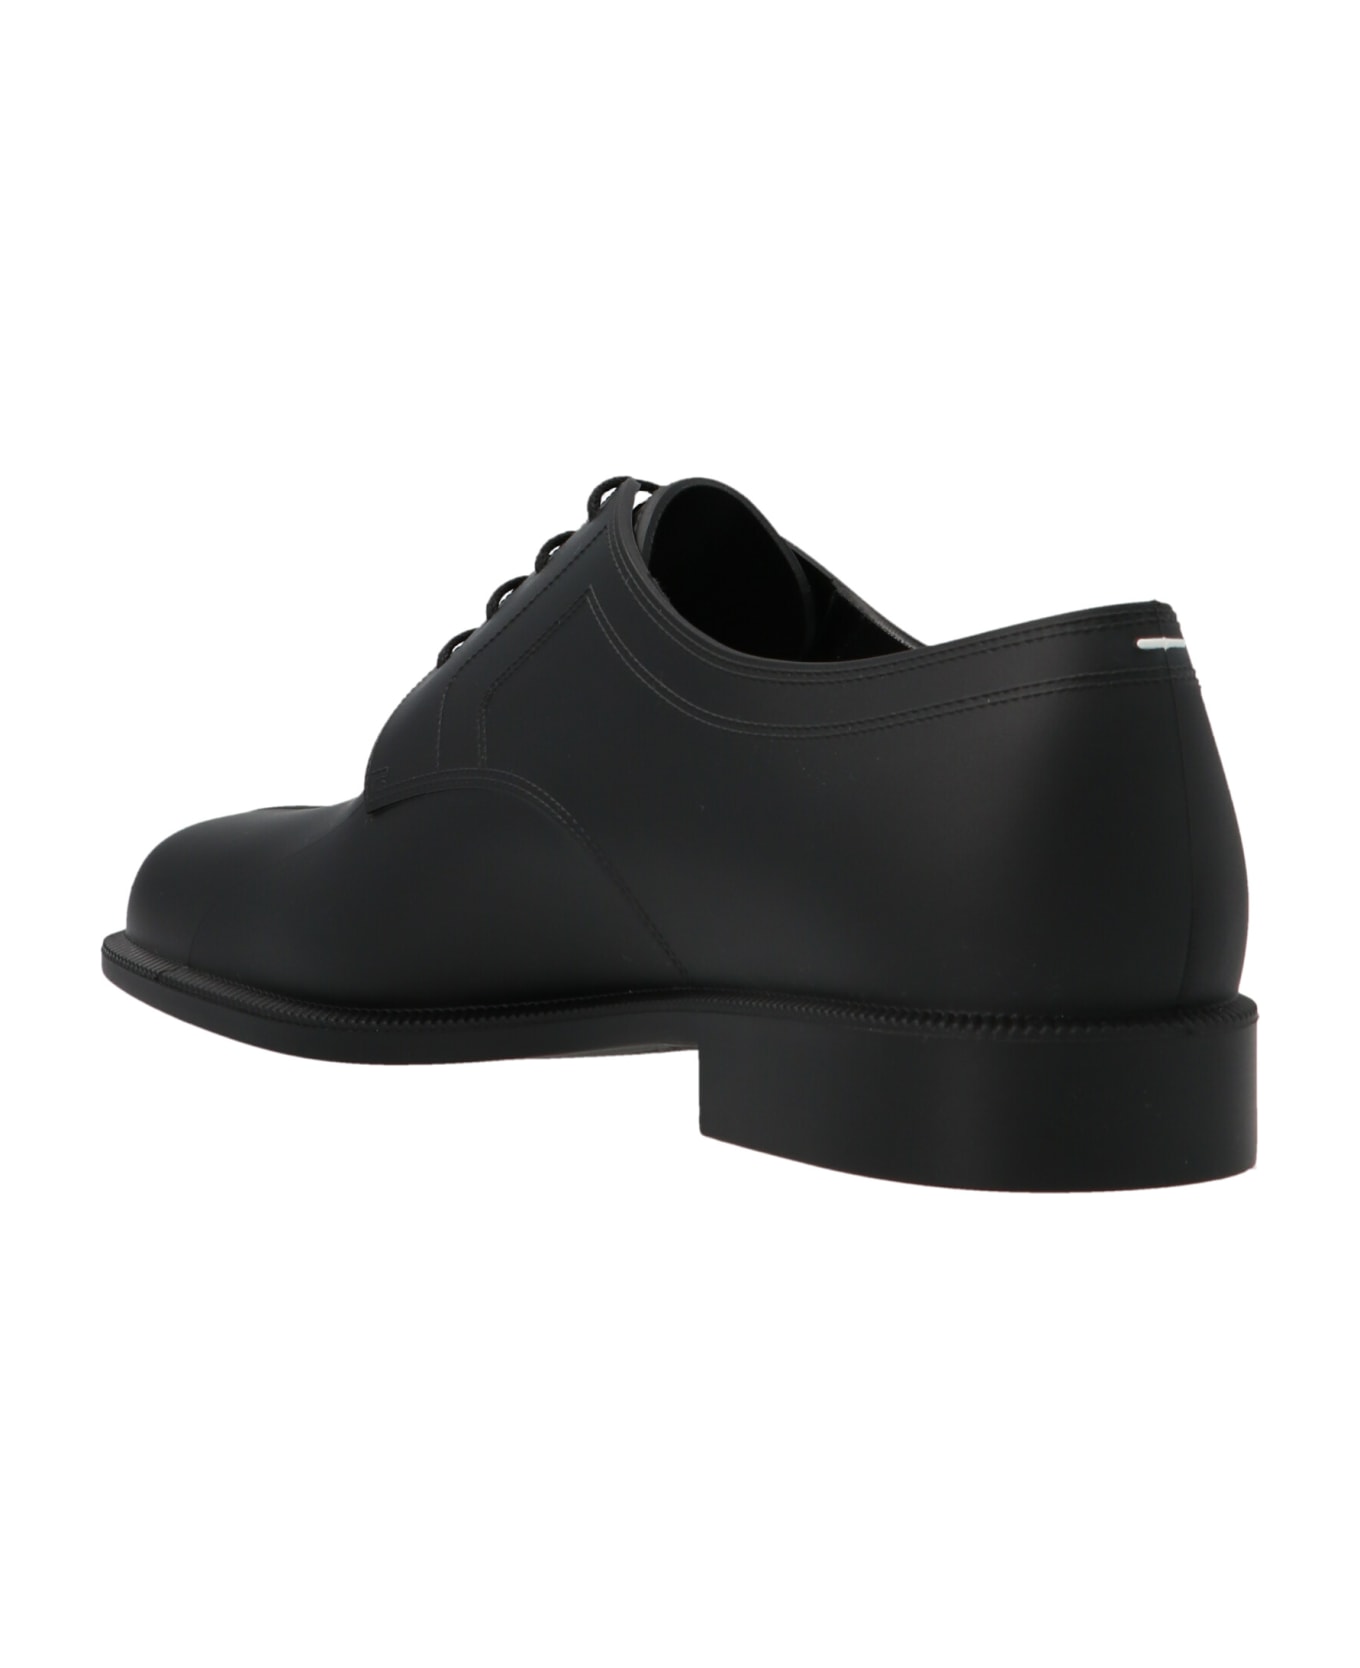 Maison Margiela Leather Lace-up Shoe - Black  